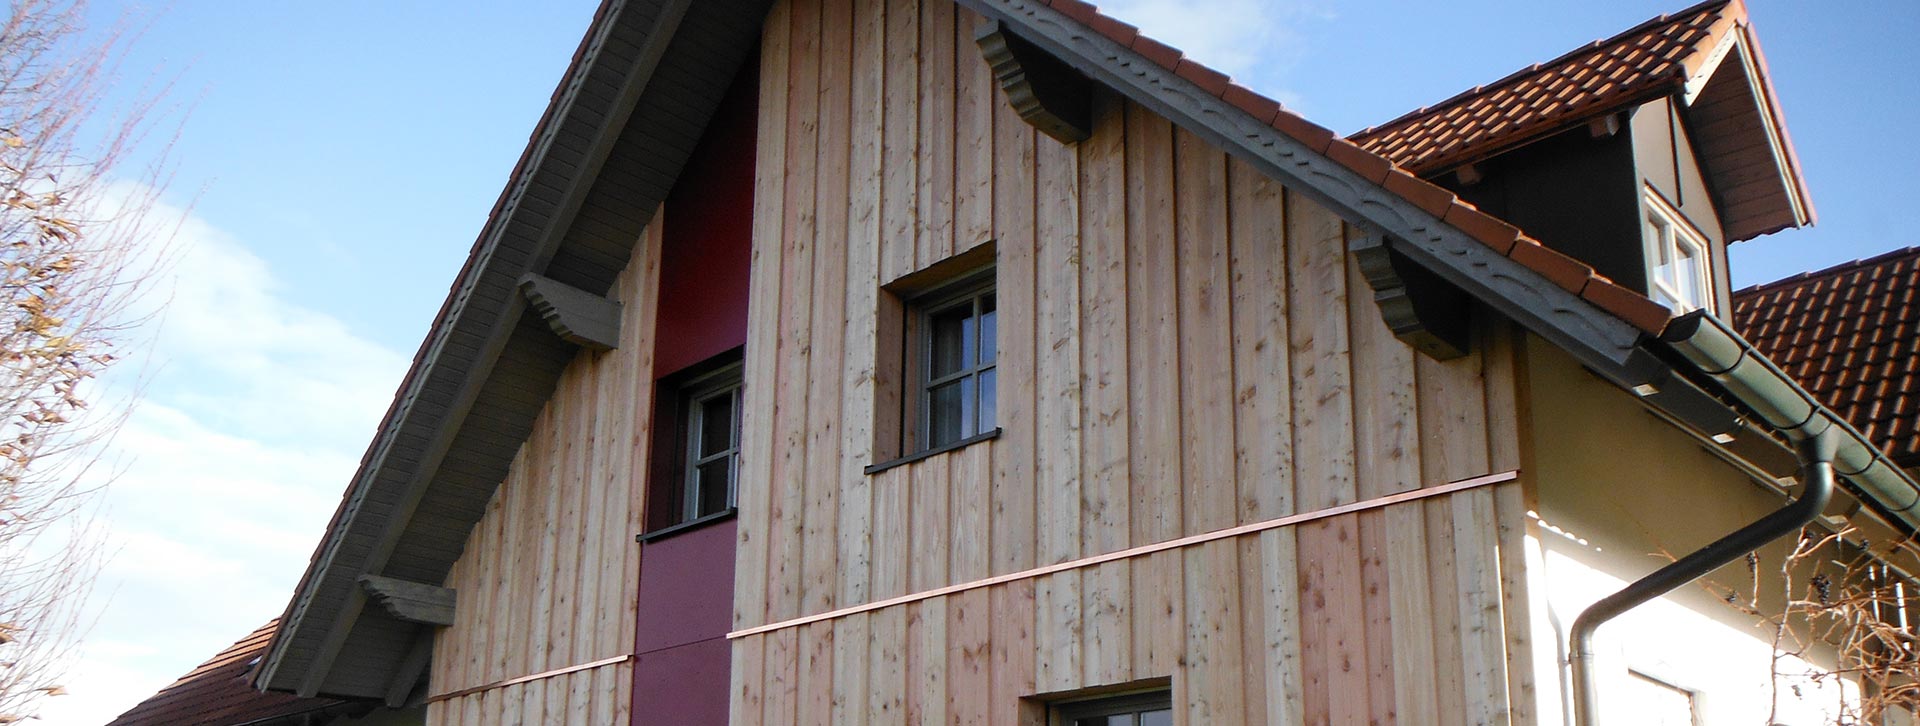 Zimmerei Roider bei Landshut - Massivholzhäuser, Sanierungen und mehr